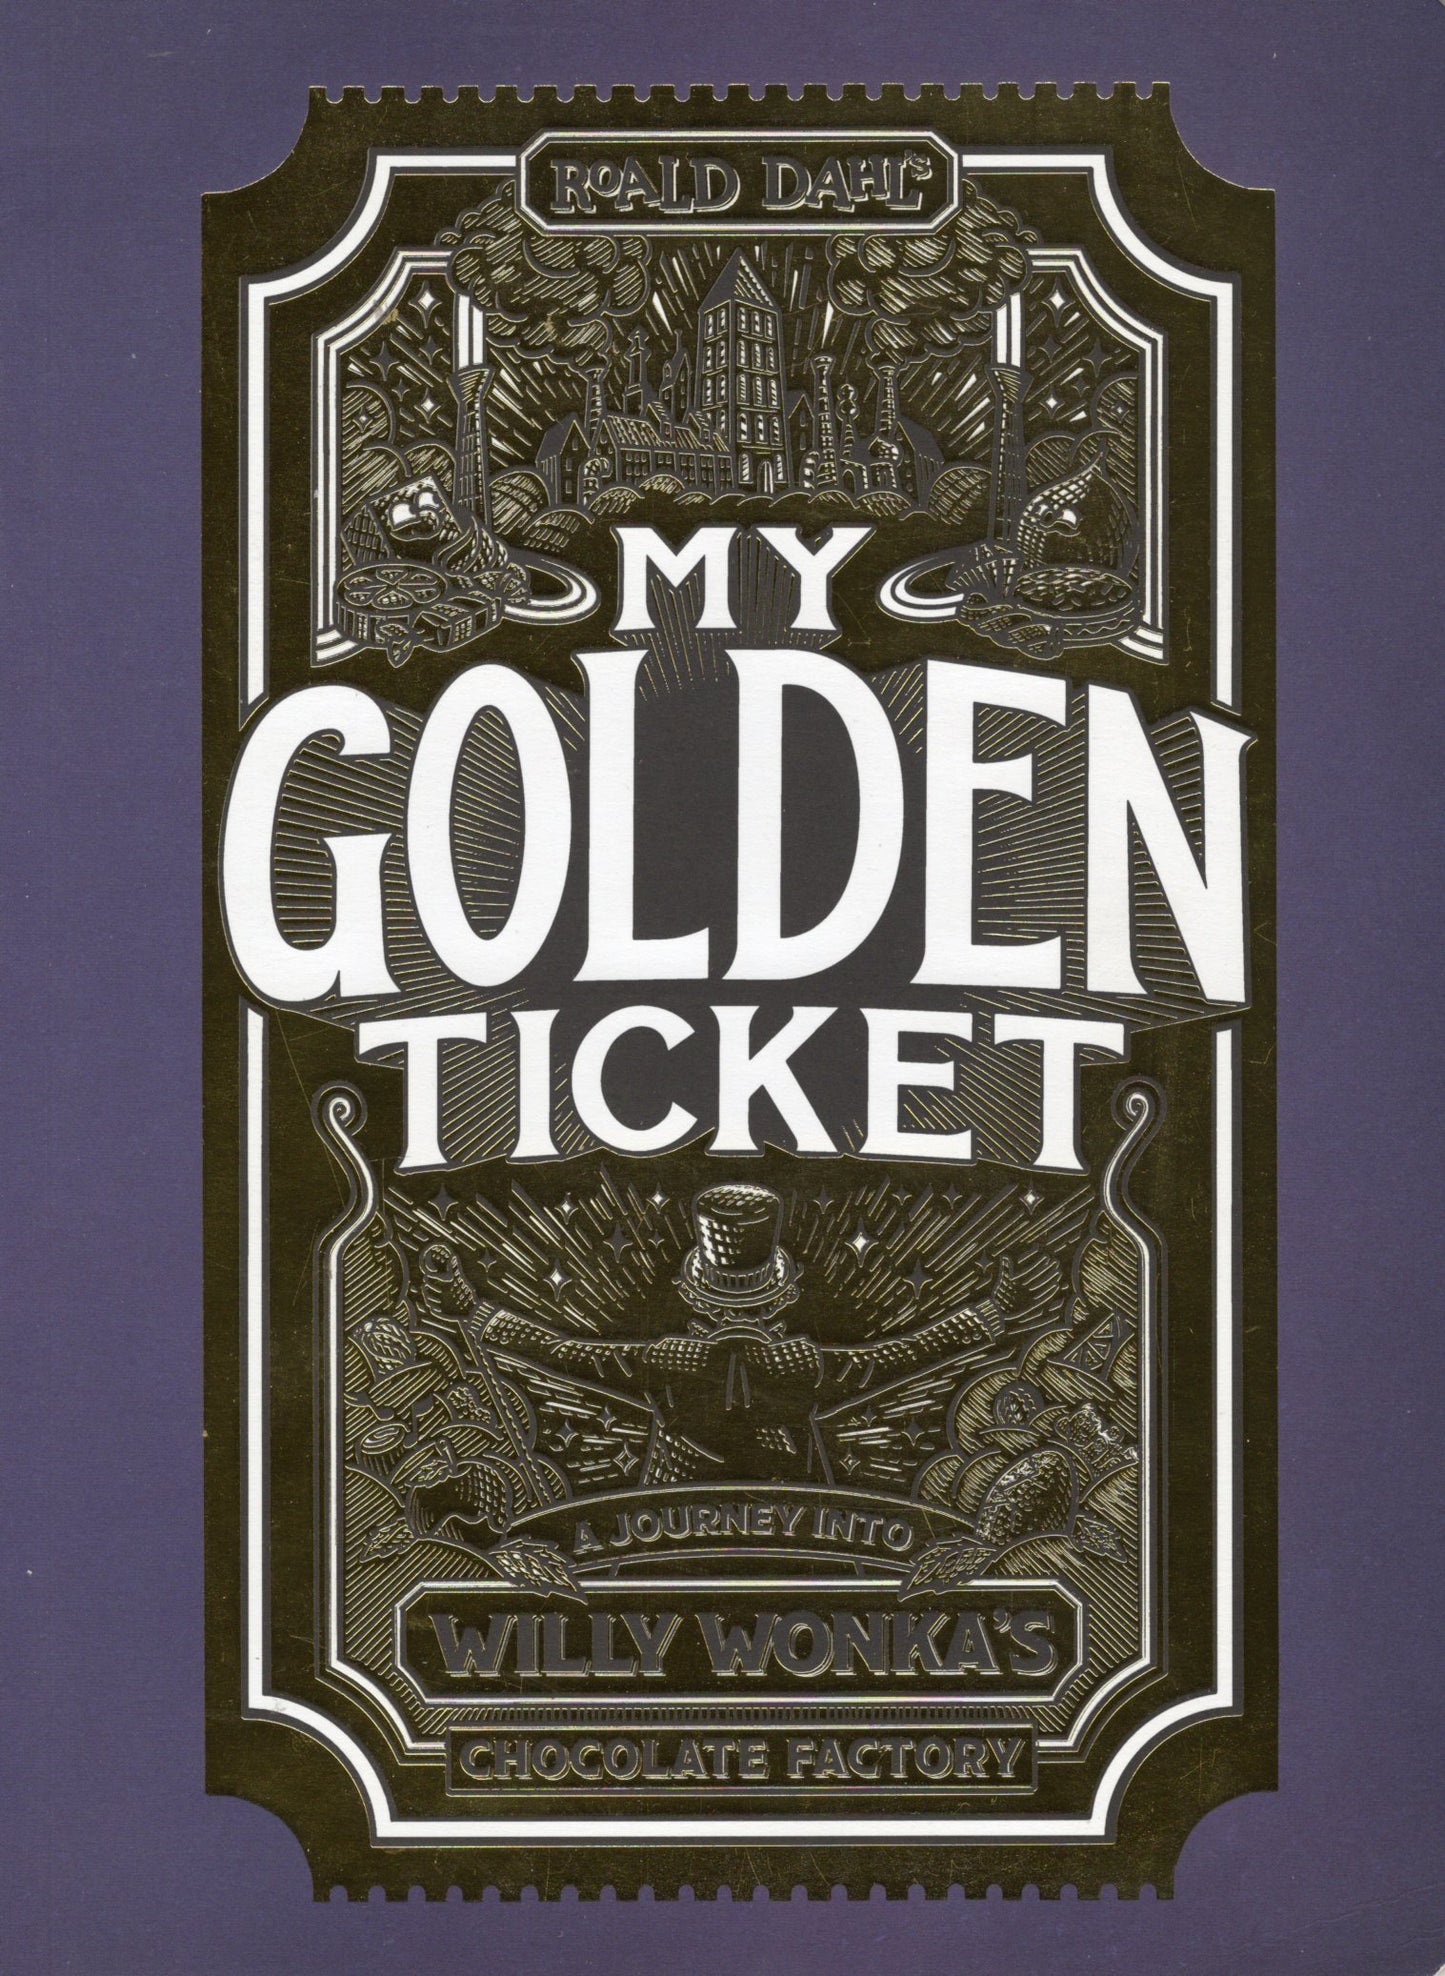 My Golden Ticket by Roald Dahl te koop op hetbookcafe.nl